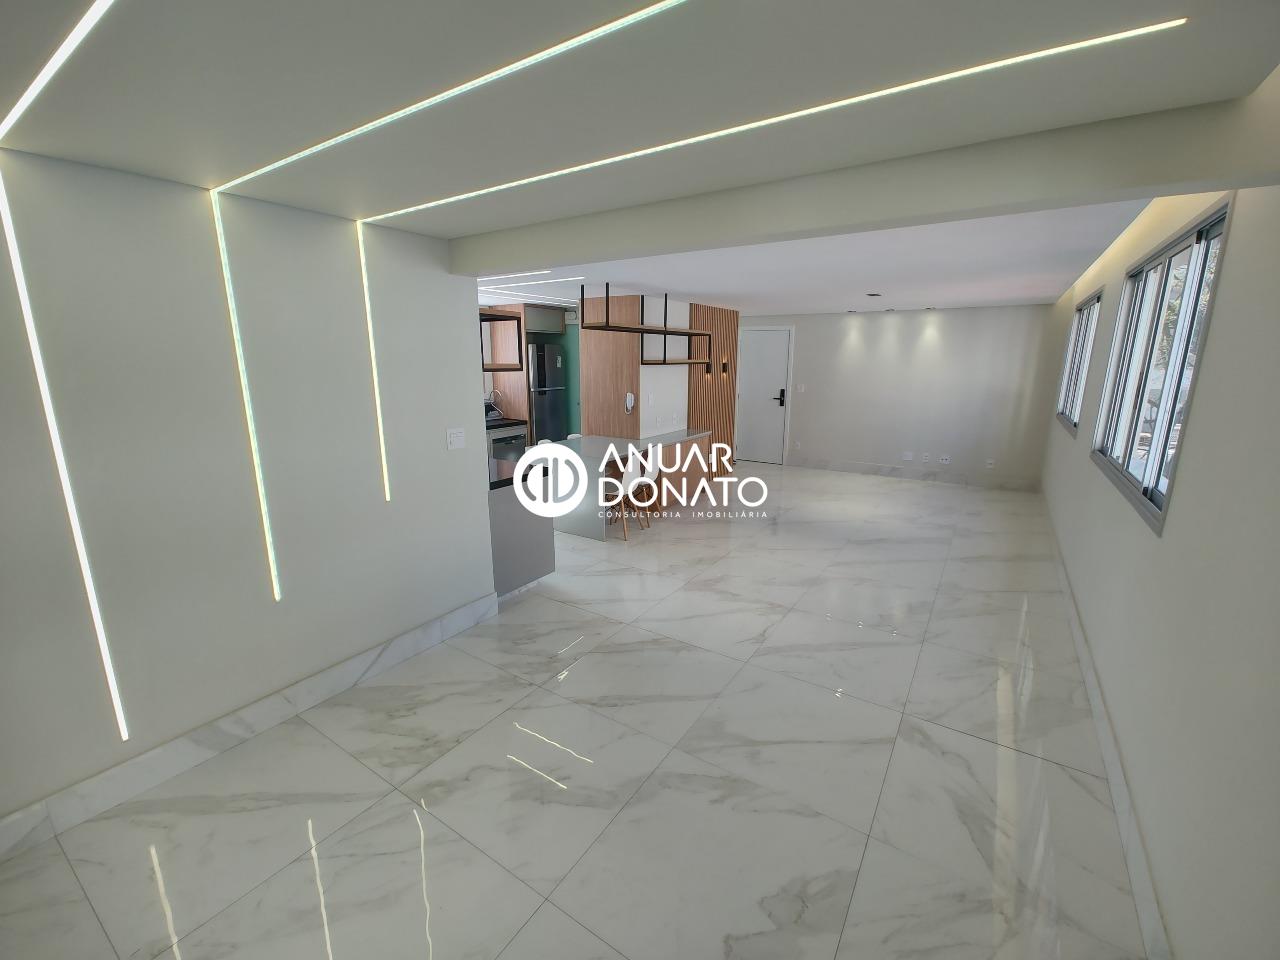 Anuar Donato Apartamento 3 quartos à venda Serra: Anuar Donato Vendas 3 Quartos Serra